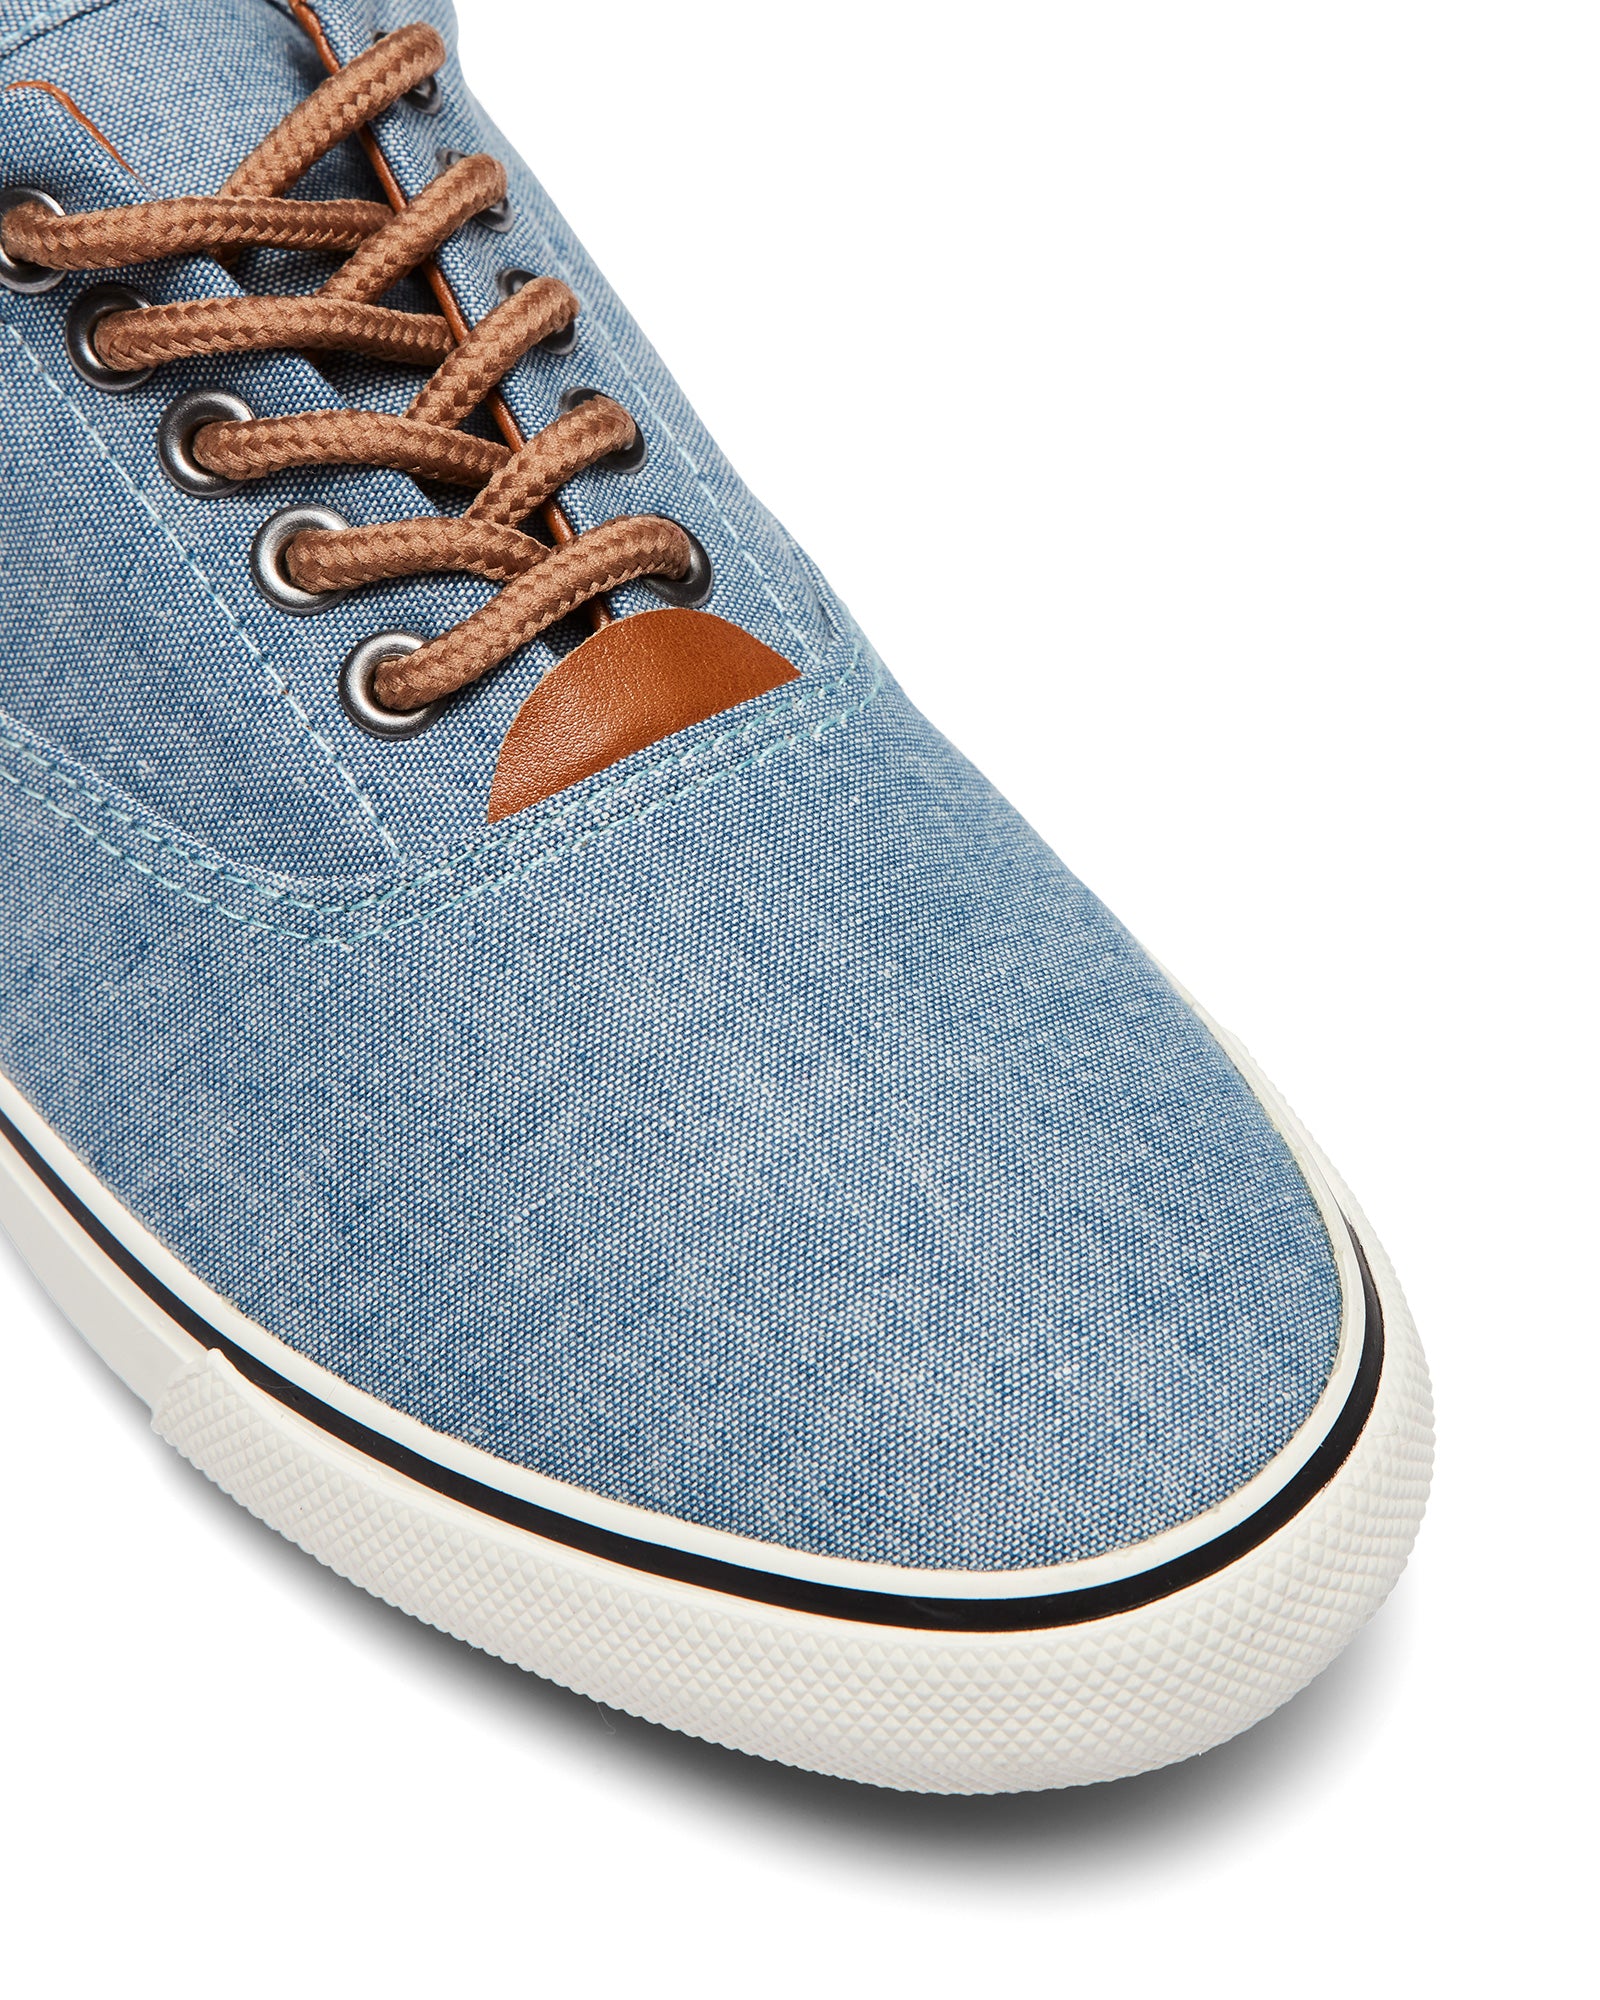 Uncut Shoes Lance Blue Denim | Men's Sneaker | Low Top | Lace Up | Casual